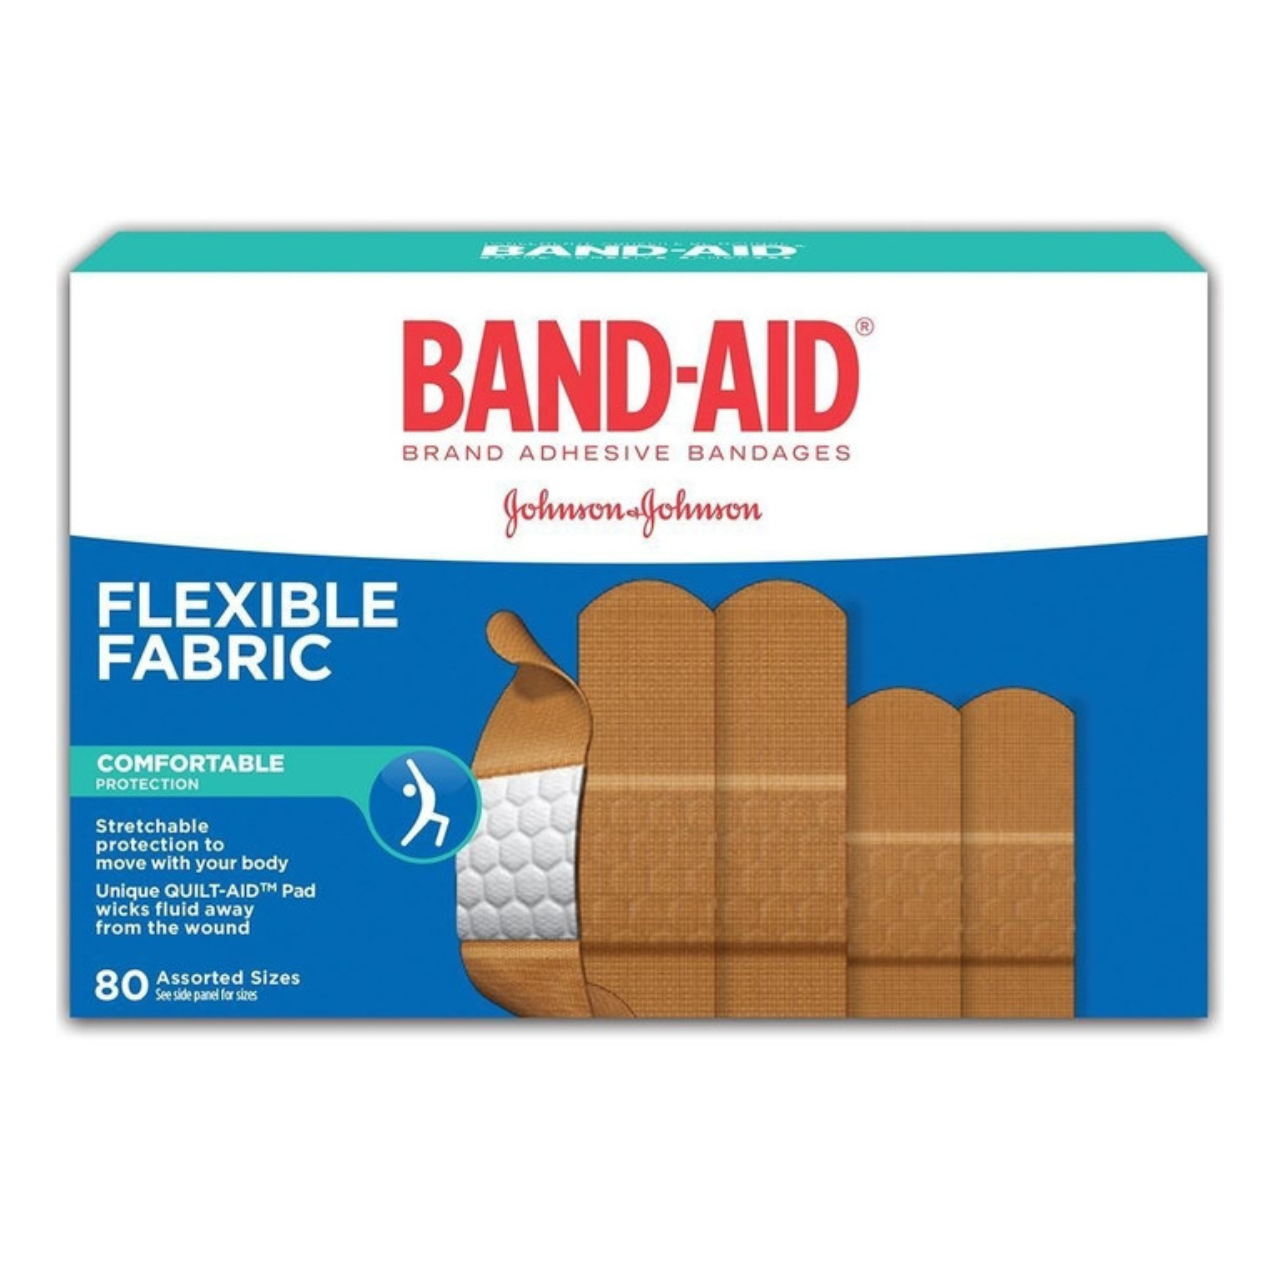 Band Aid Flexible Fabric Adhesive Bandages, Assorted Sizes Value